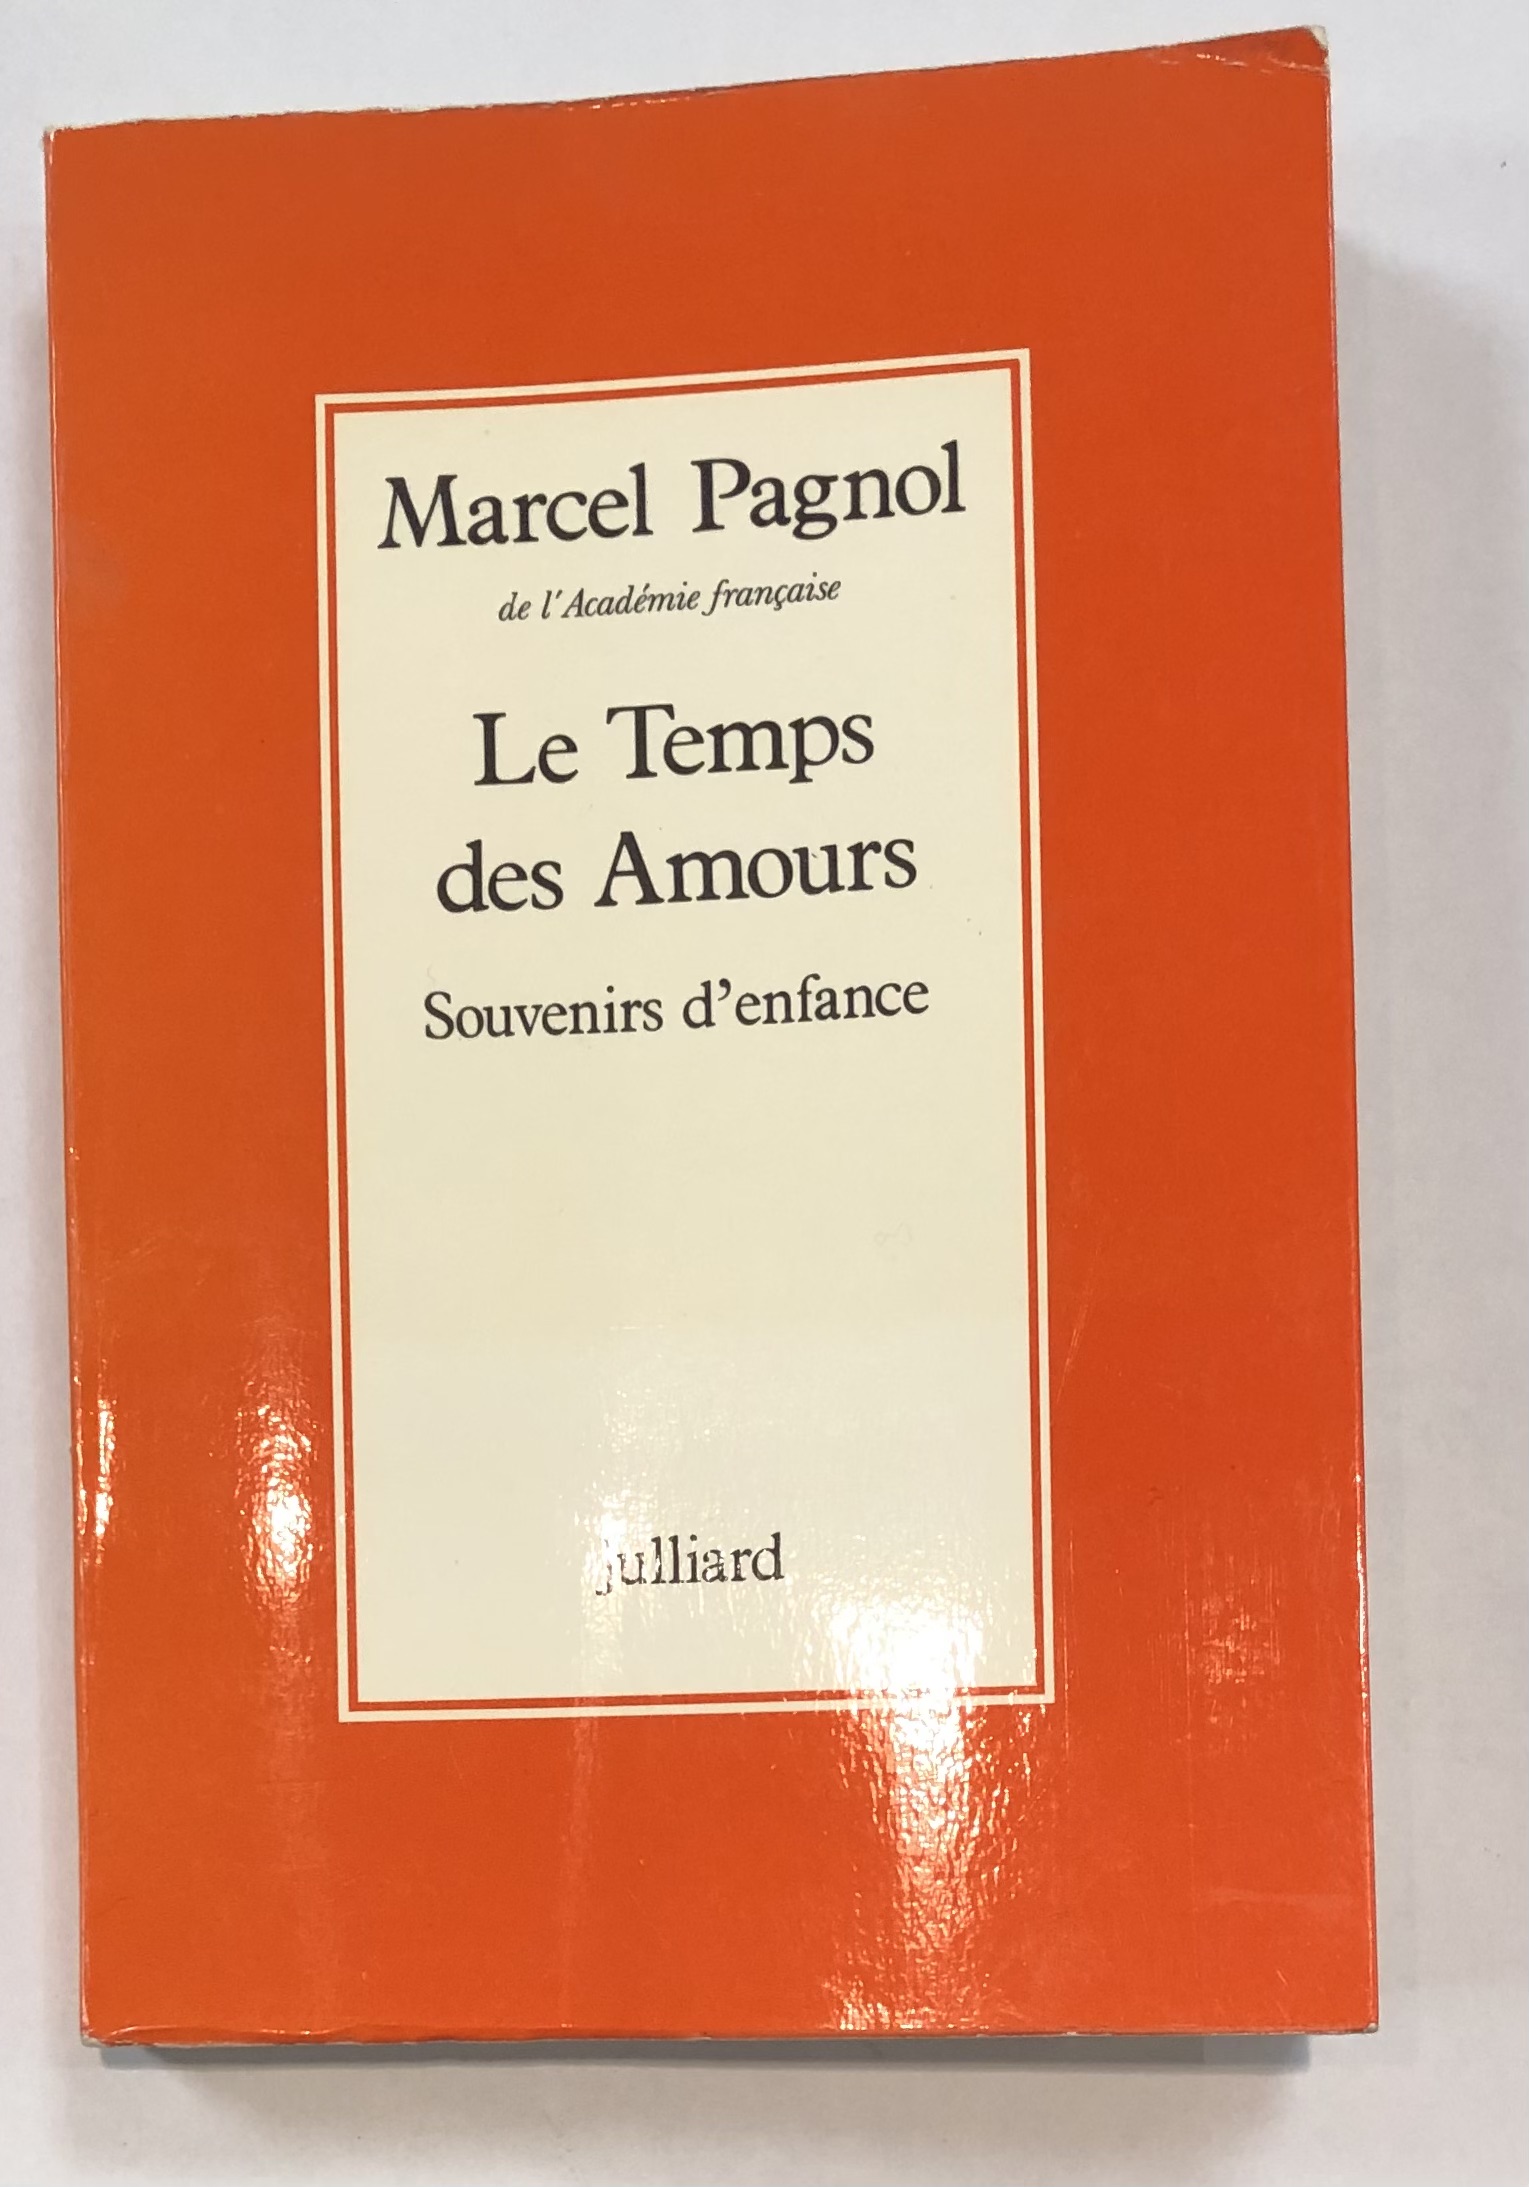 Pour une heure d'abandon Tome V : Les naufragés du coeur - Marcel Priollet  par Marcel Priollet: Used: Very Good